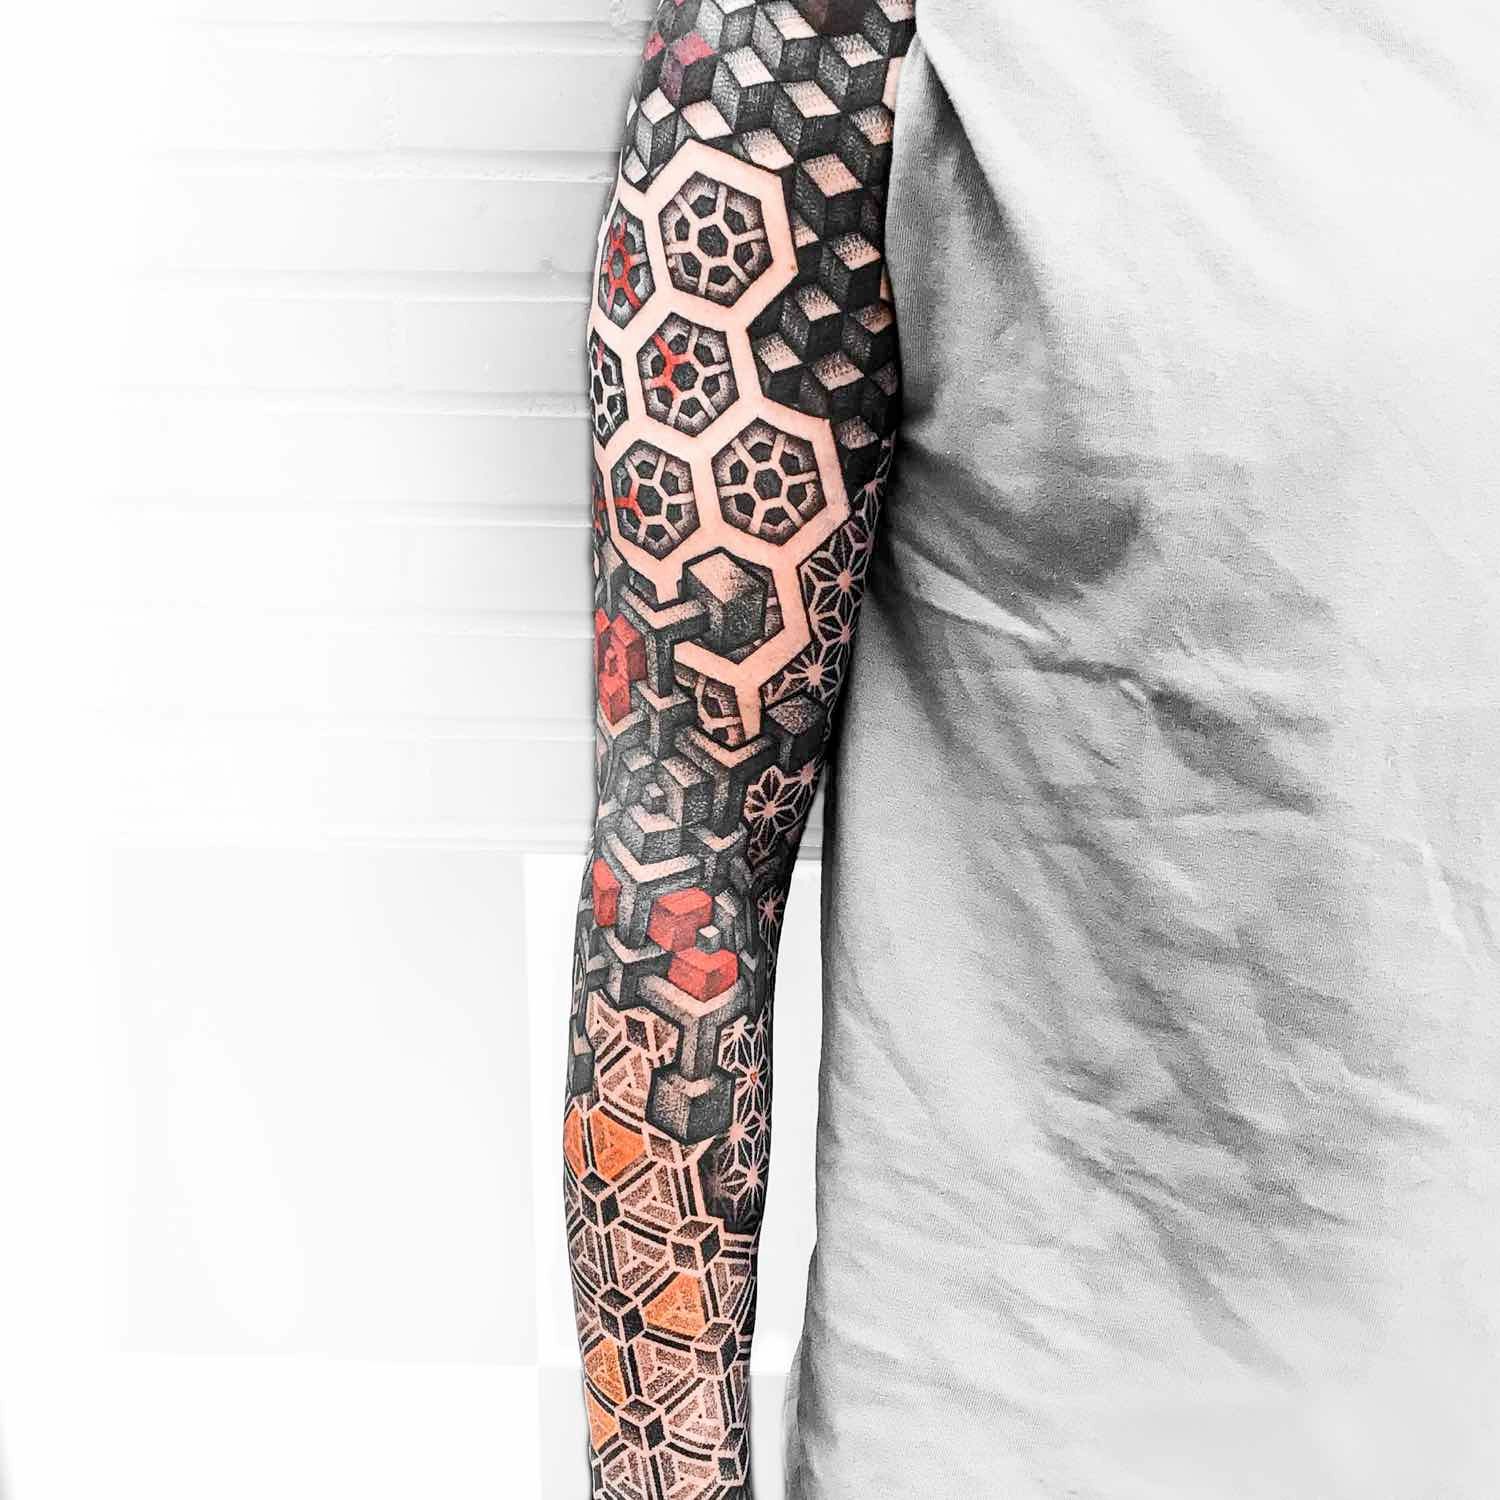 Tatuajes manga del brazo